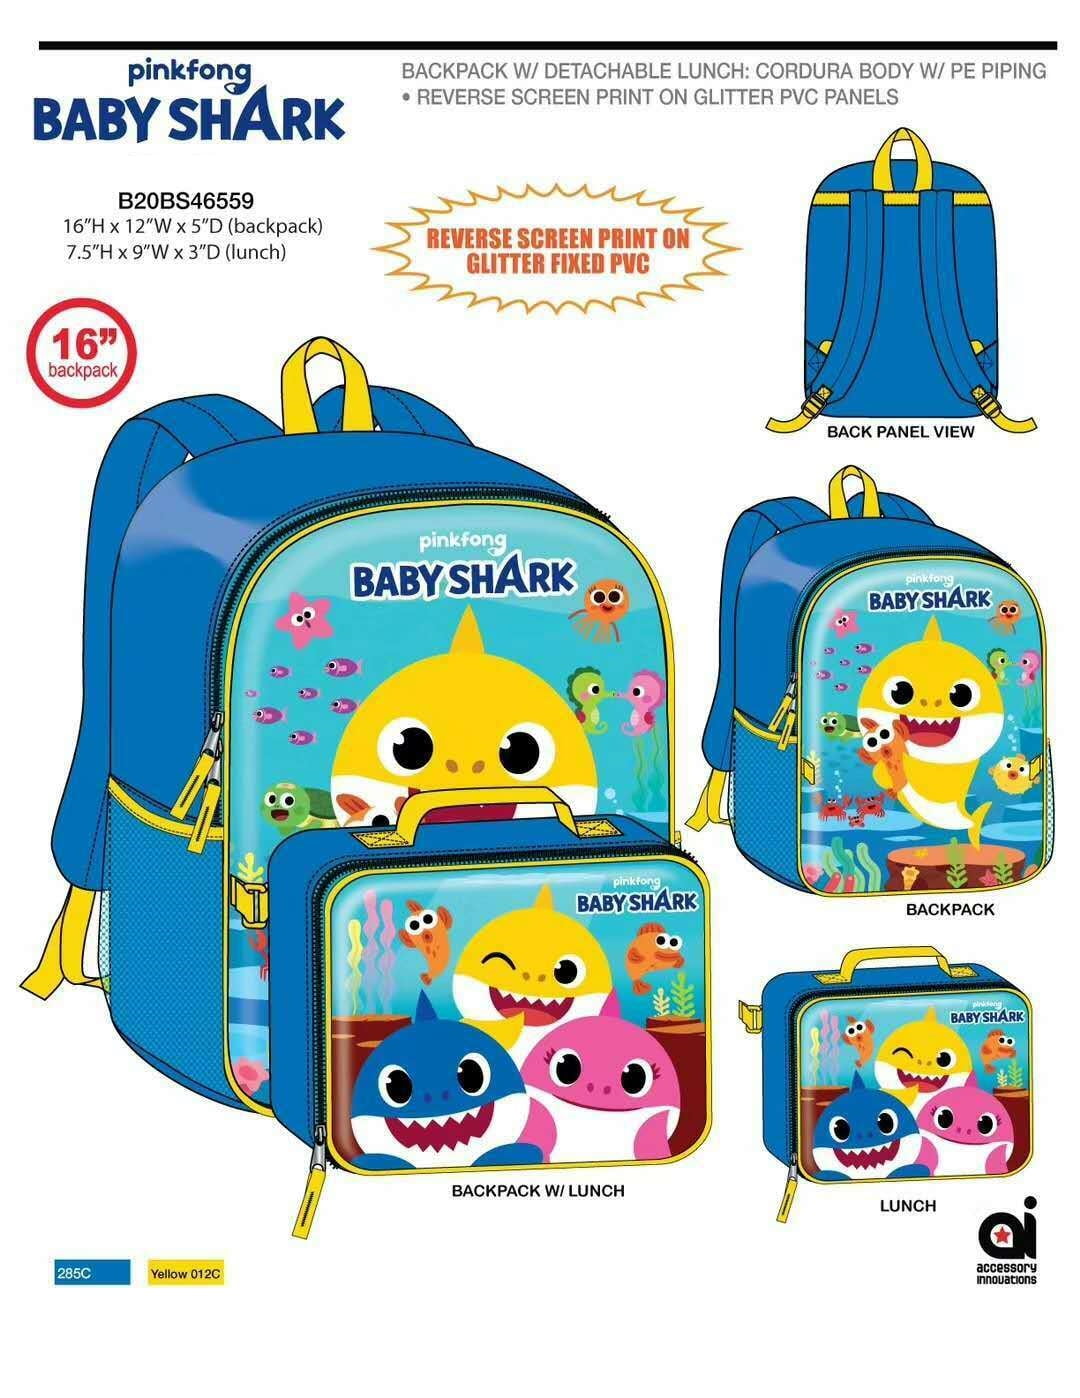 beige-dog kindergarten school bag Baby Backpack Kids cartoon schoolbag mochila gift